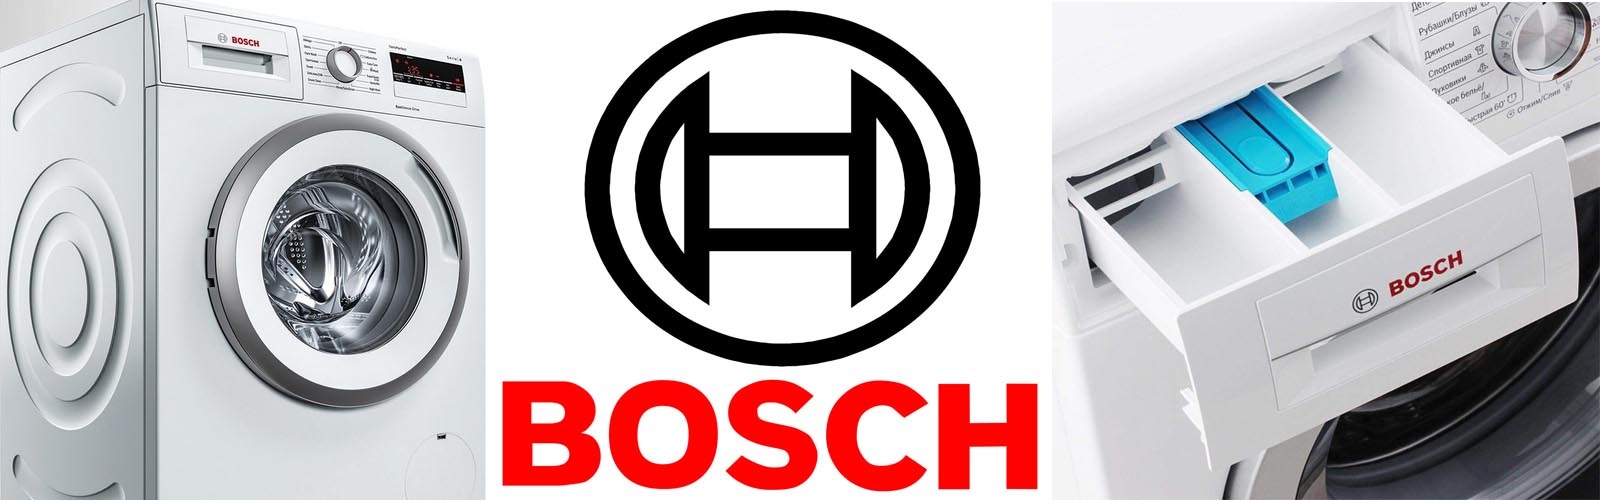 zašto je Bosch toliko popularan